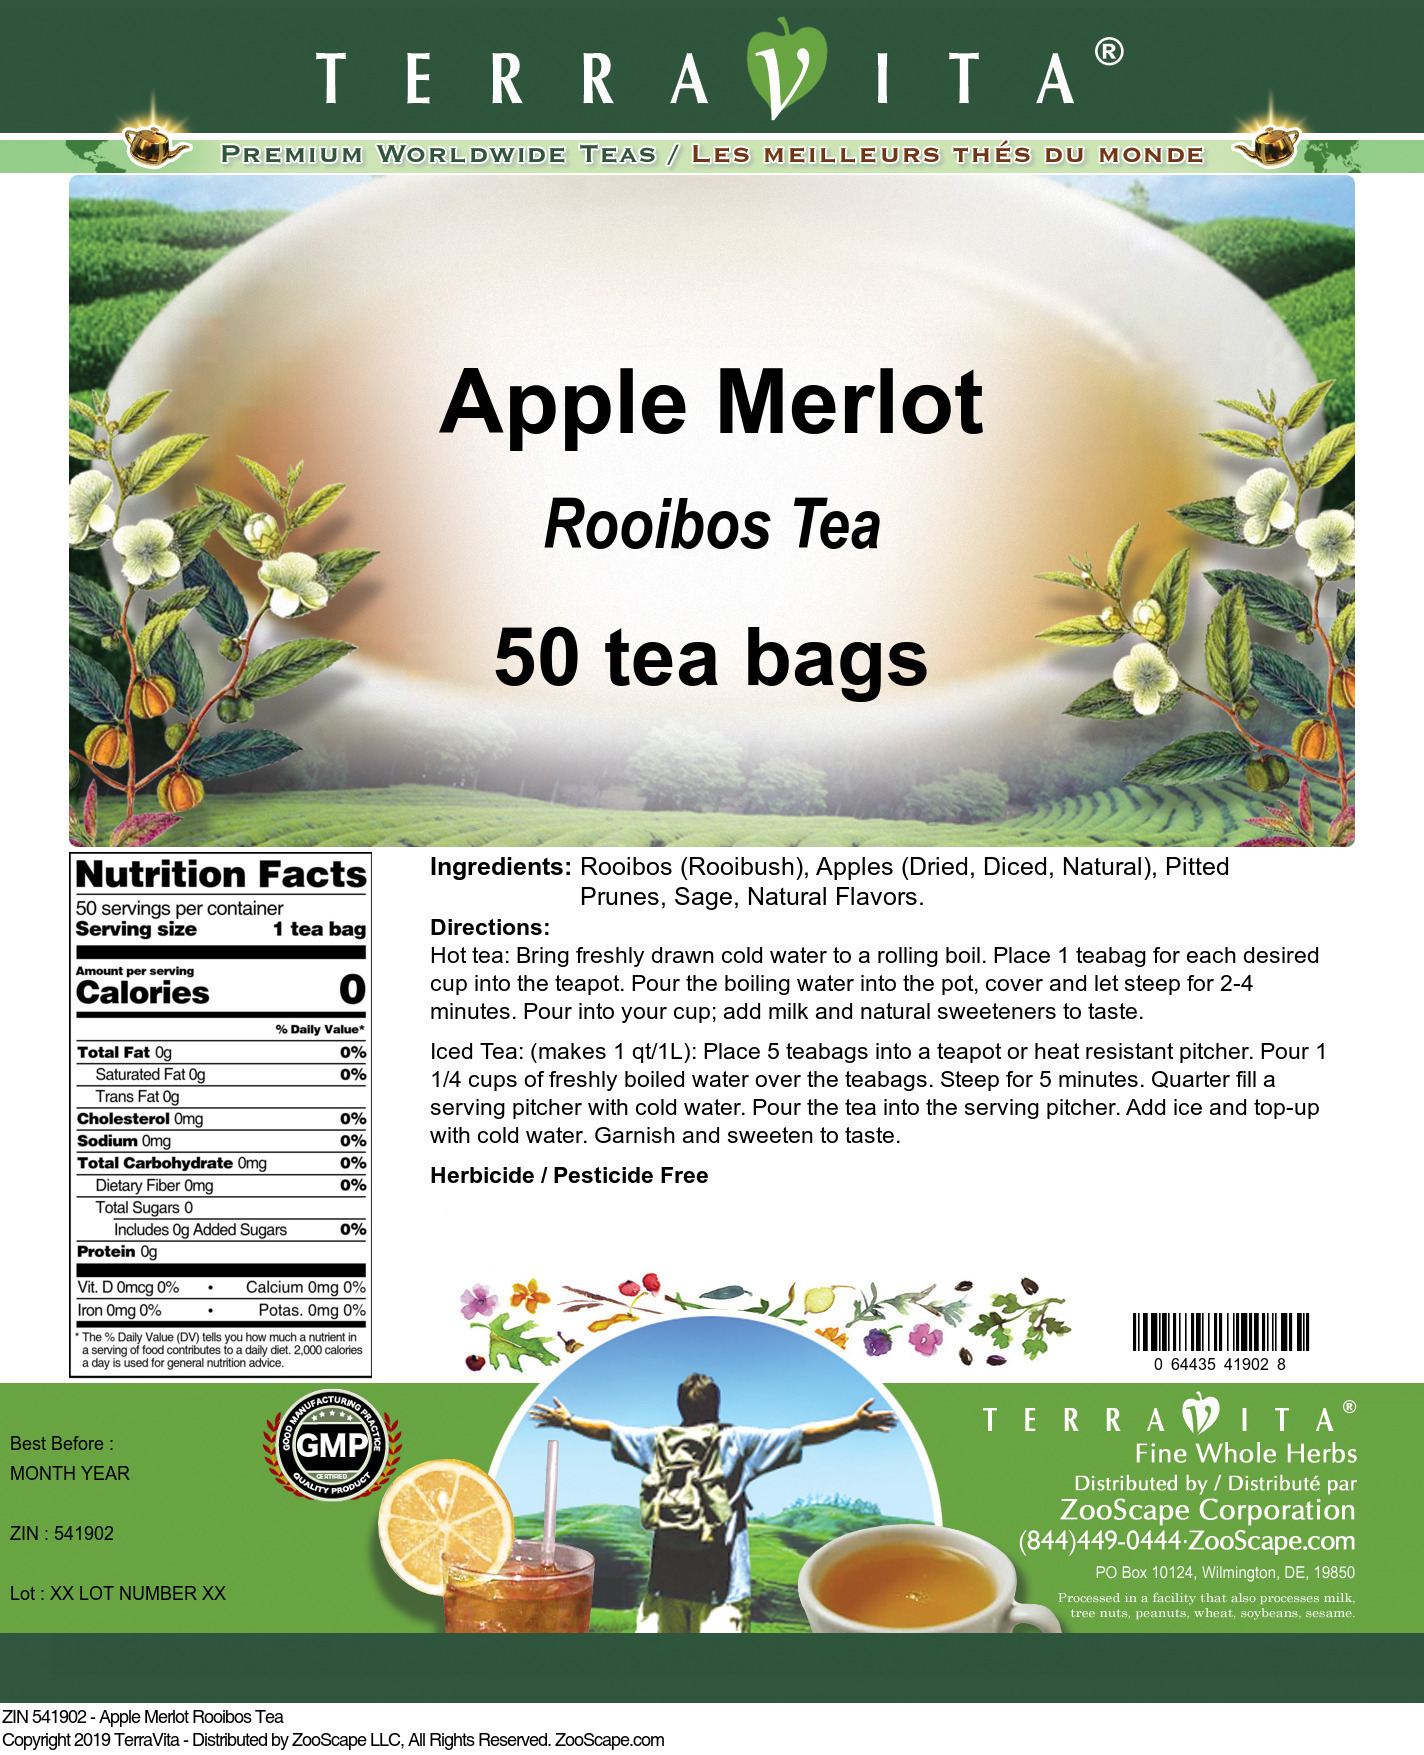 Apple Merlot Rooibos Tea - Label